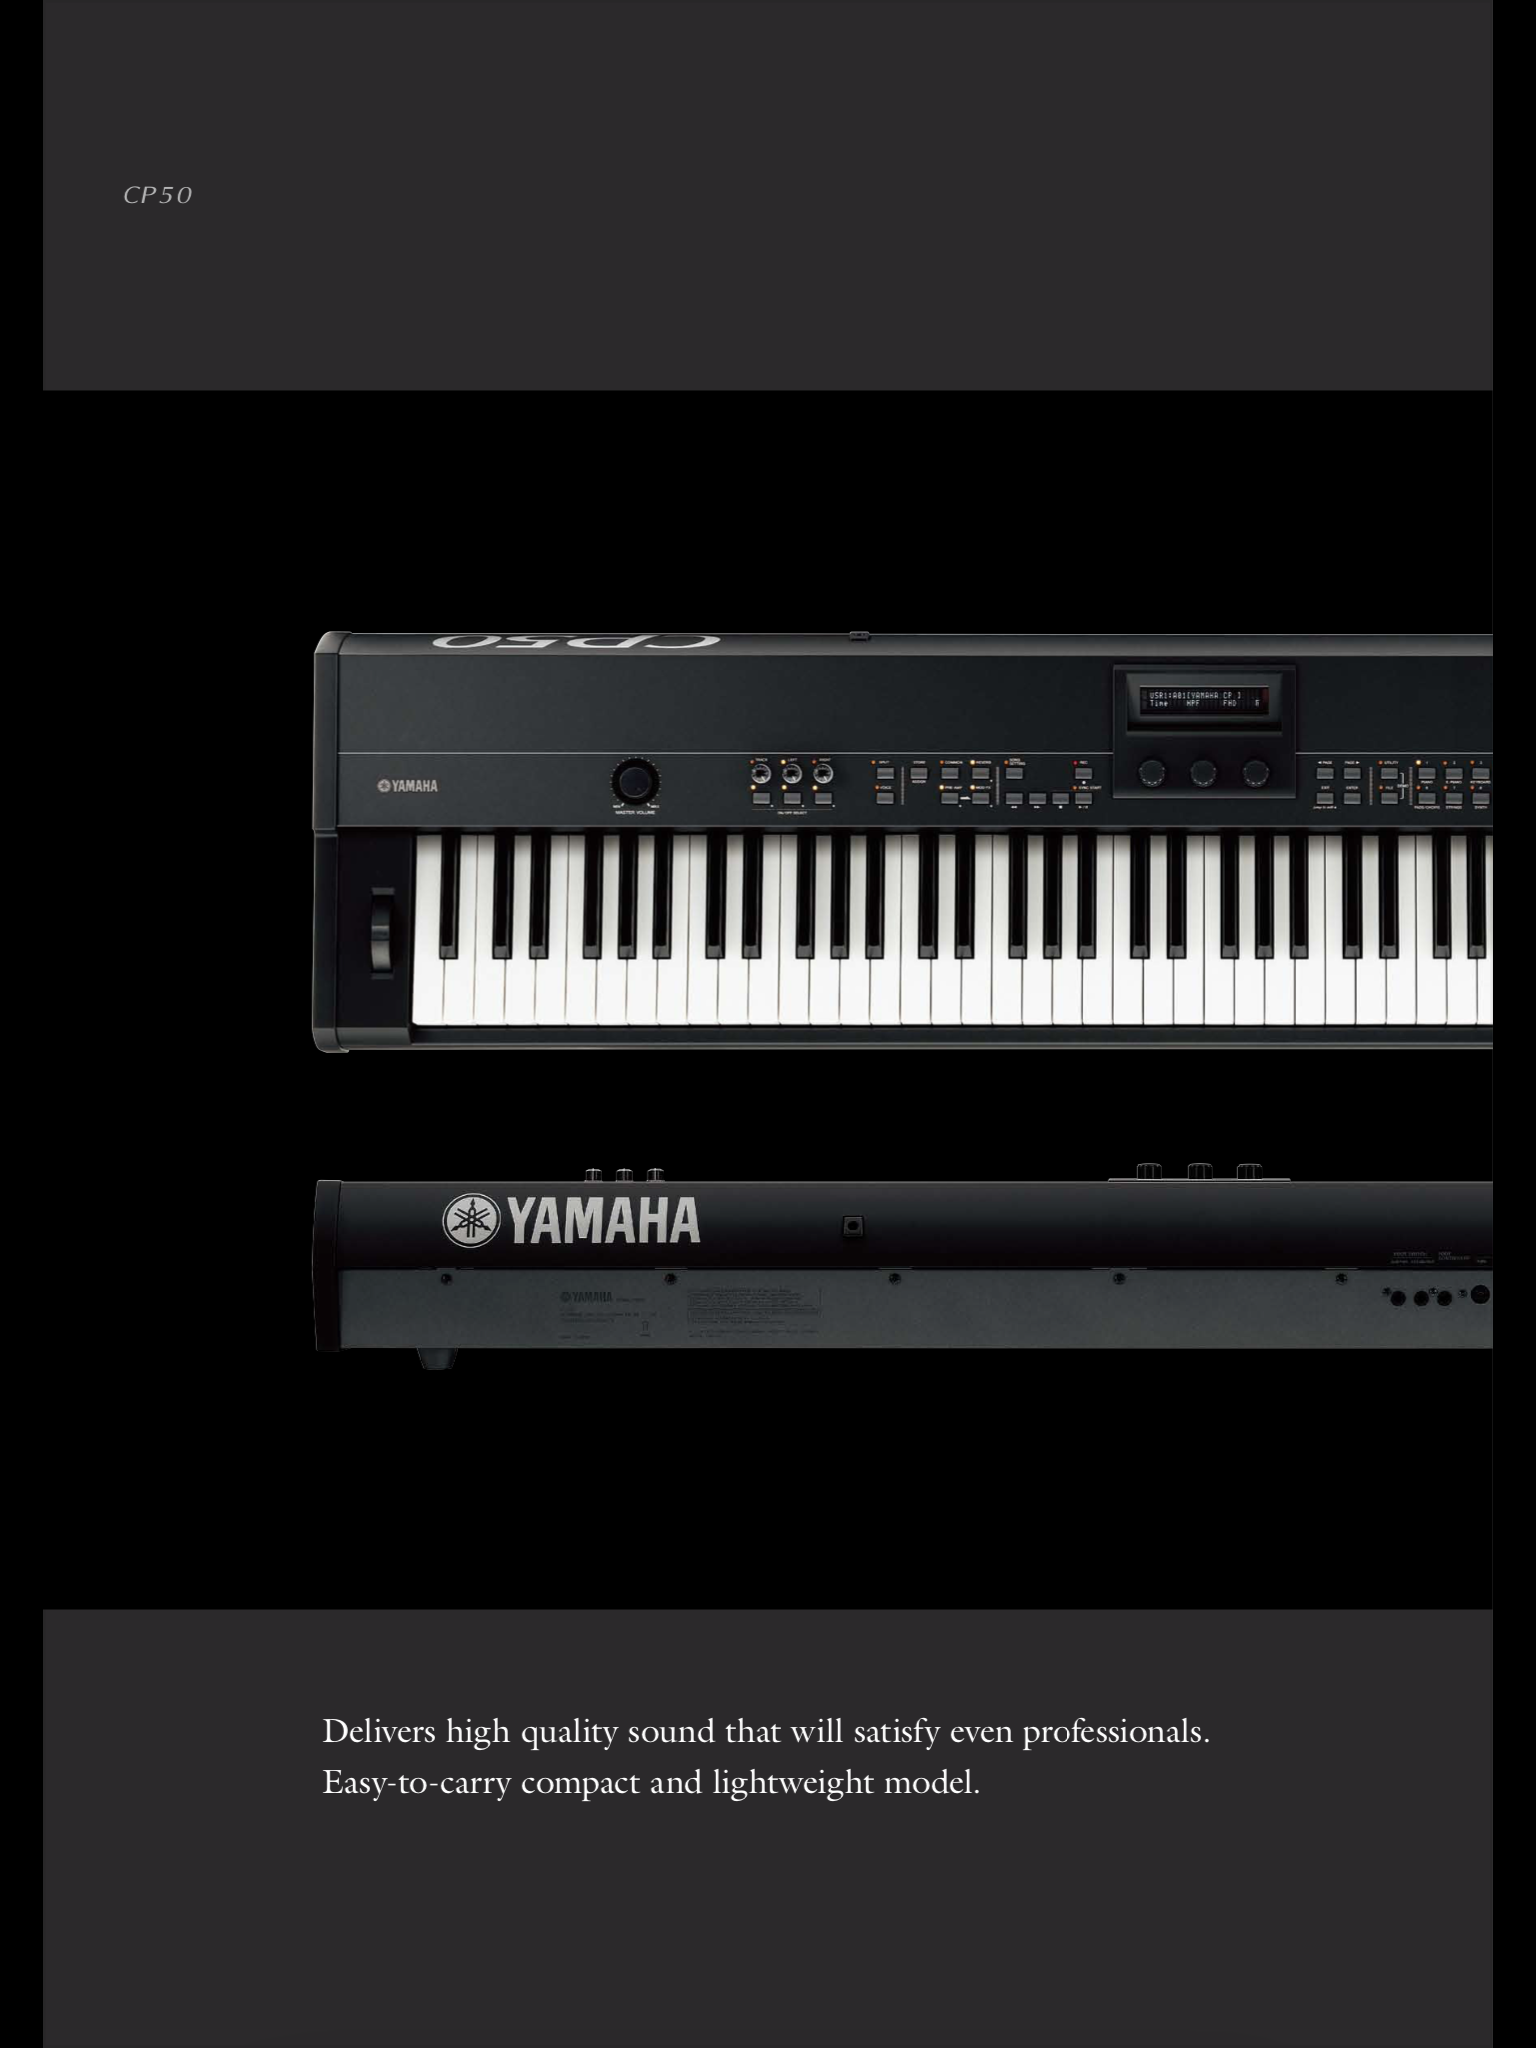 正規品セール美品 YAMAHA ステージピアノ CP50 ヤマハ コンパクト 軽量 持ち運び可能 練習 ＳＣＭ音源 88 鍵GH鍵盤 高音質 高性能 ヤマハ